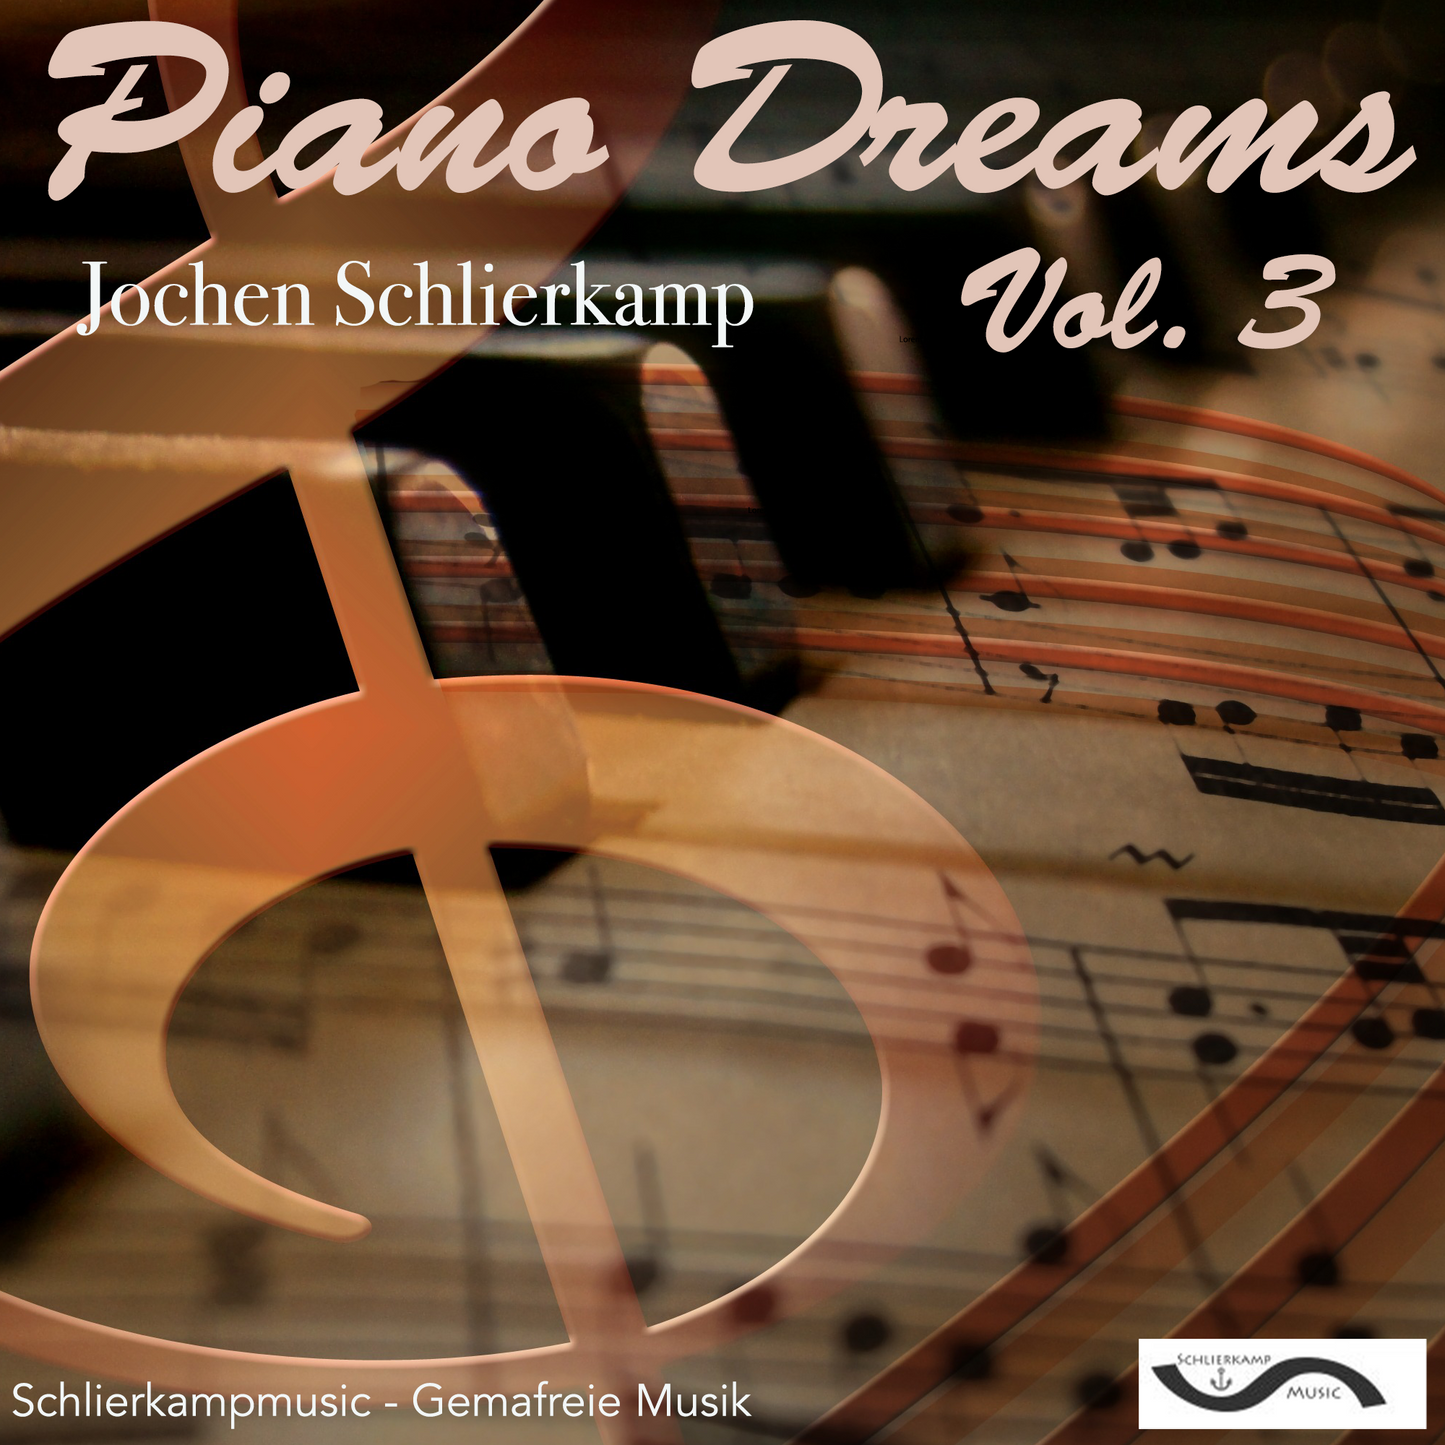 Piano Dreams Vol. 3 (Download mit Lizenz für gewerbliche Nutzung)